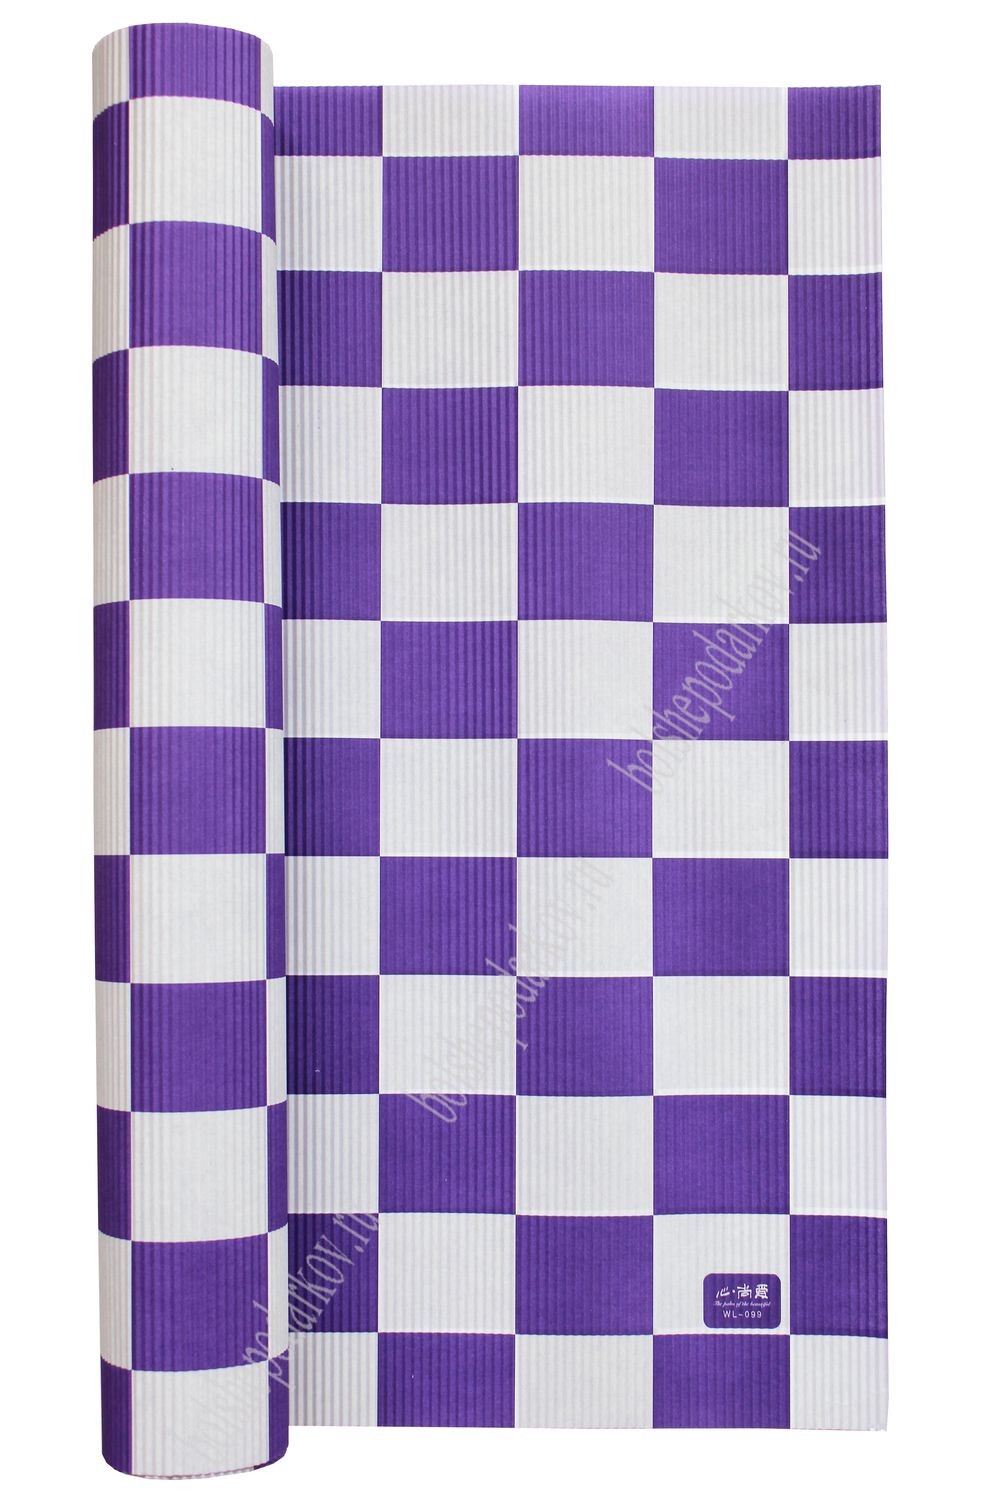 Бумага гофрированная лист 50*70 см (30 листов) фиолетовый квадрат